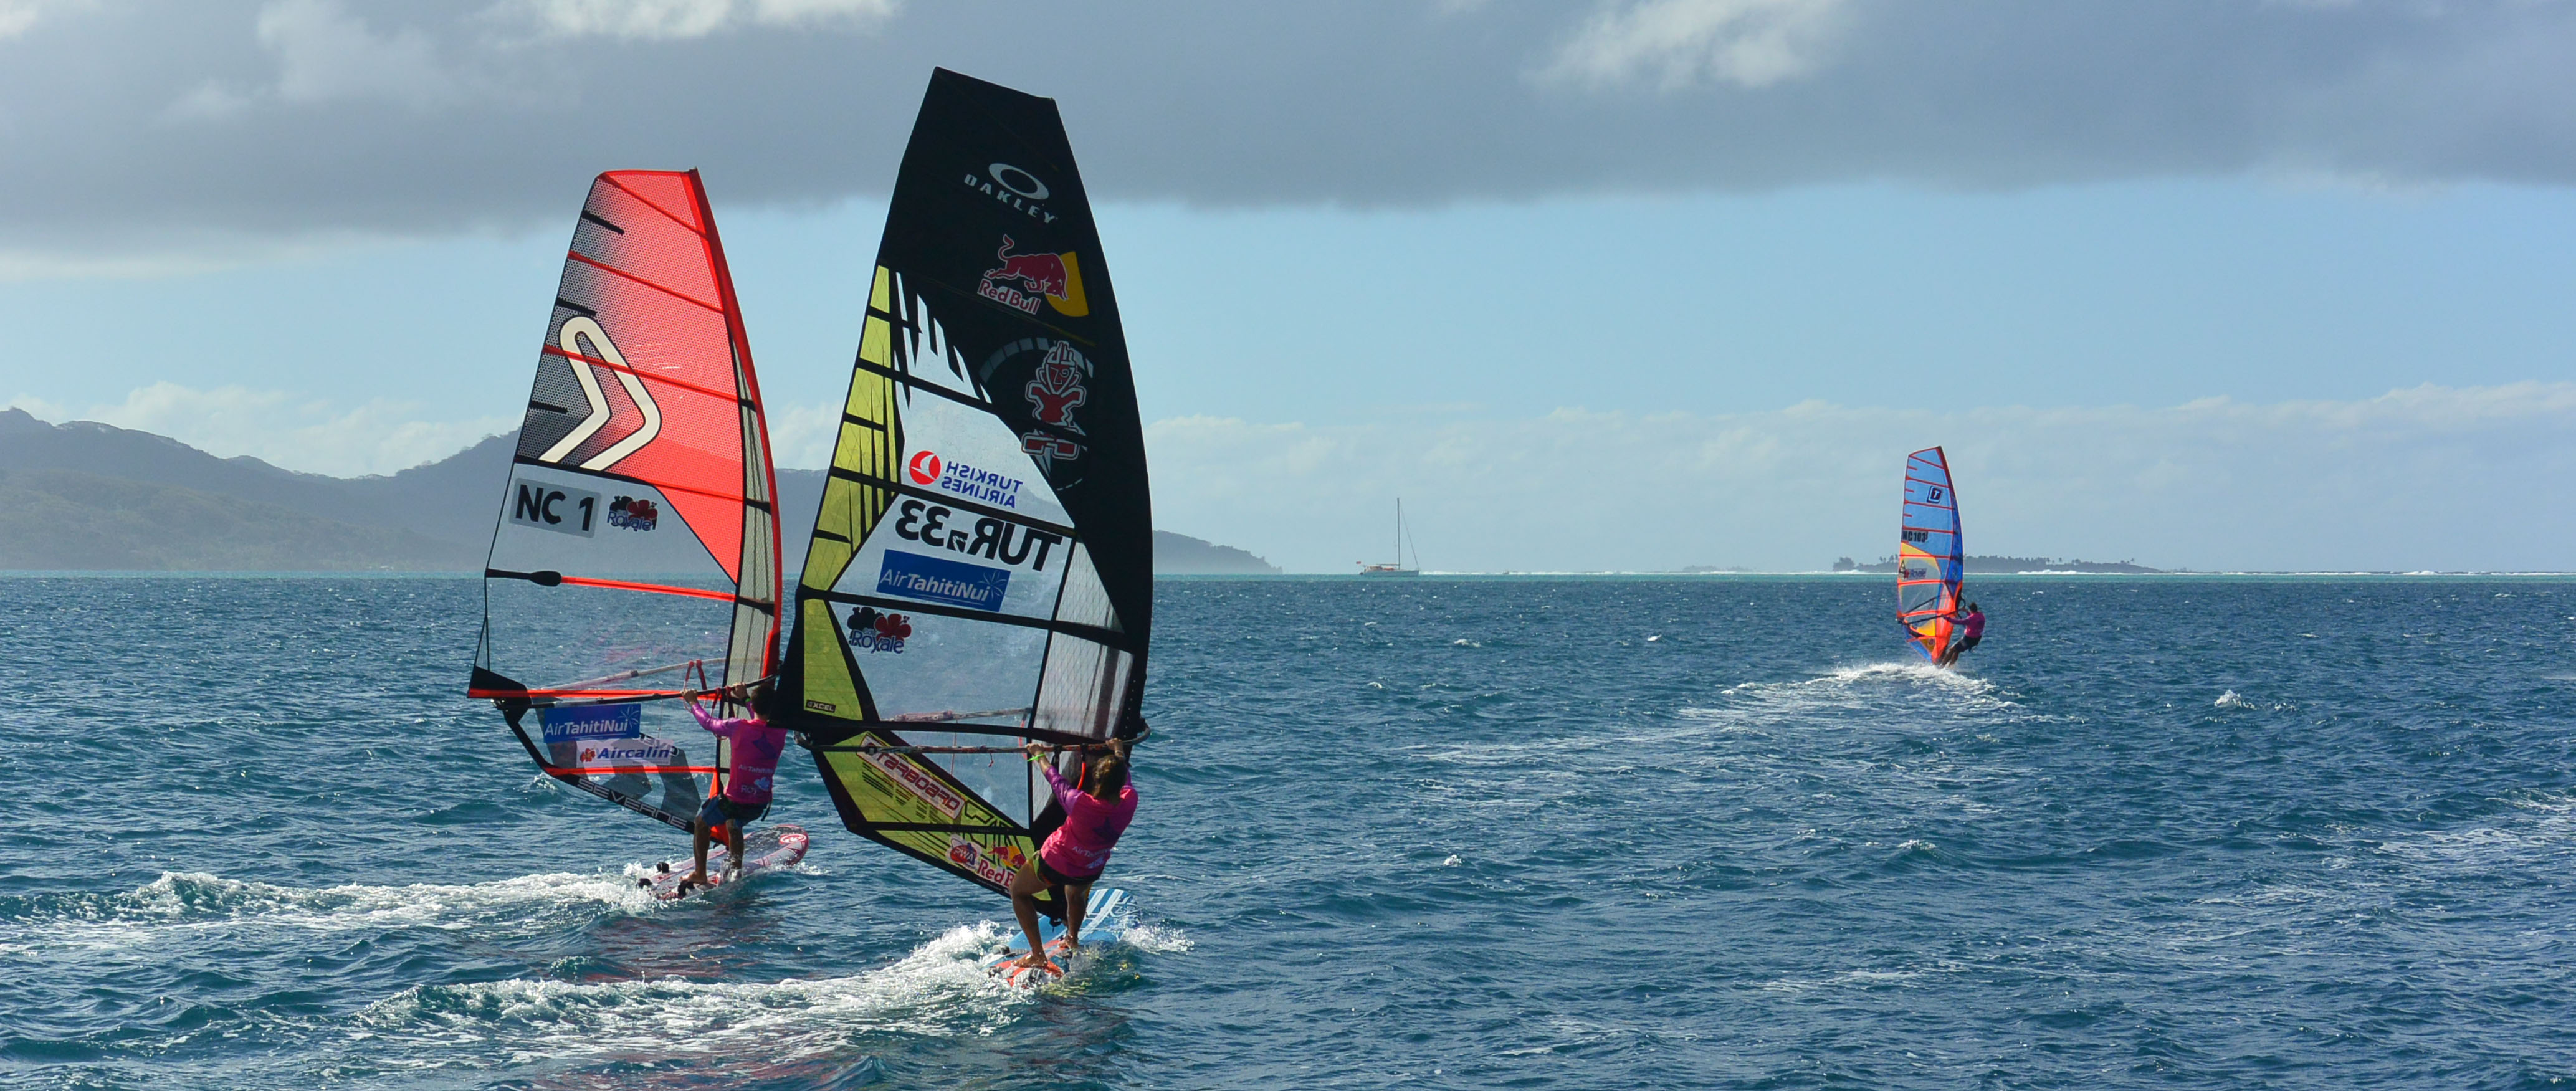 Windsurf: Conditions idéales pour la "Free ride cup" à Raiatea